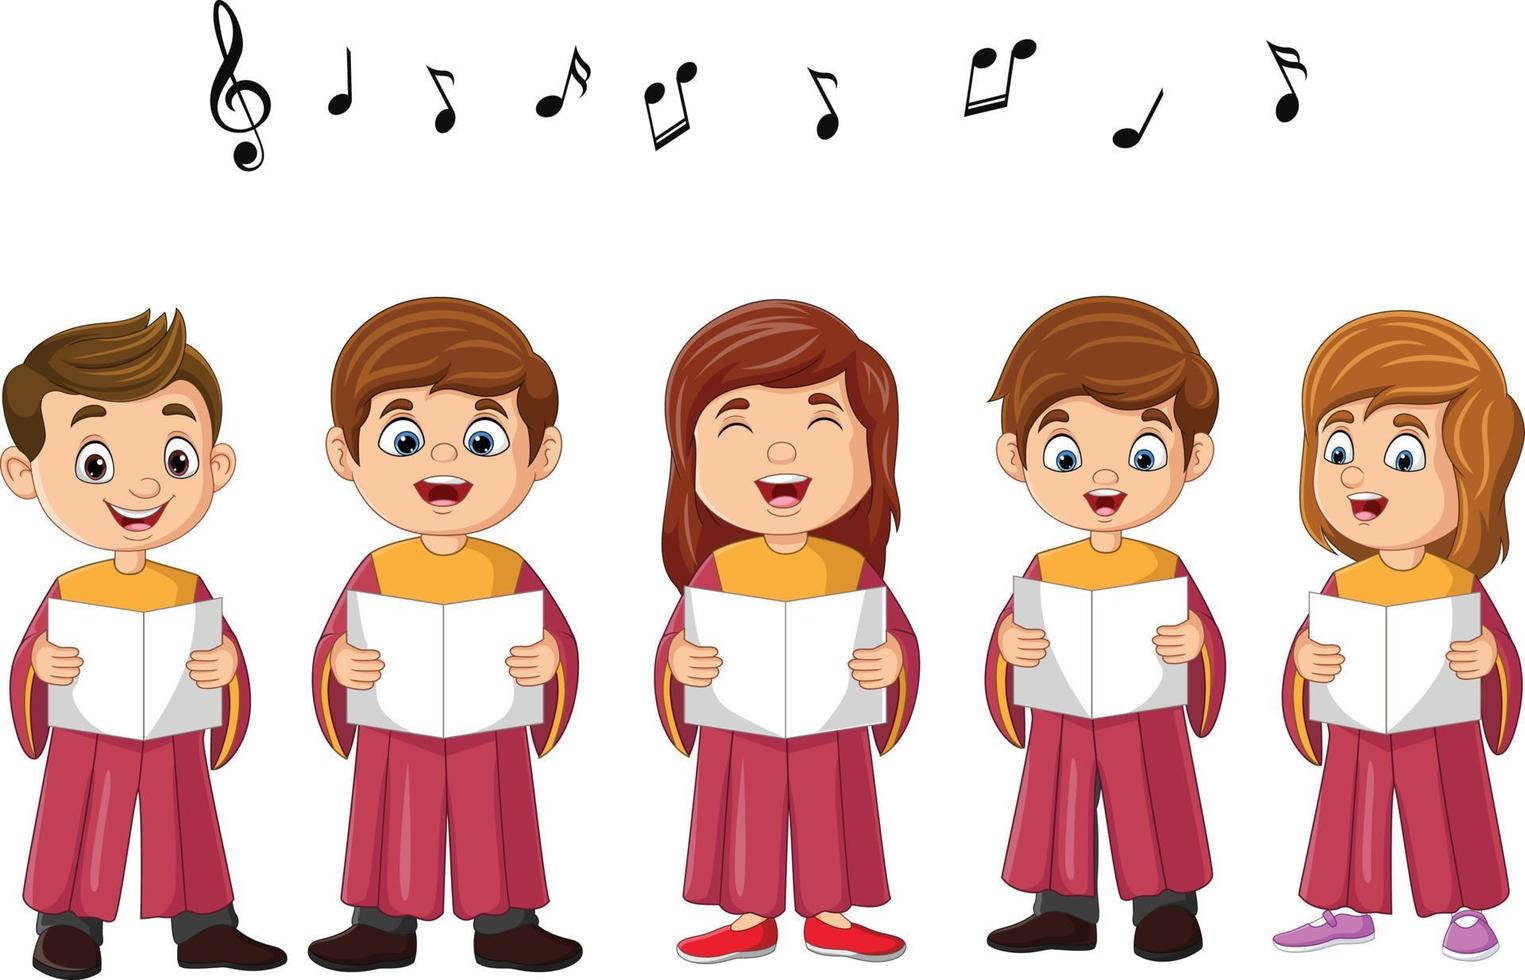 niños del coro de dibujos animados cantando una canción vector